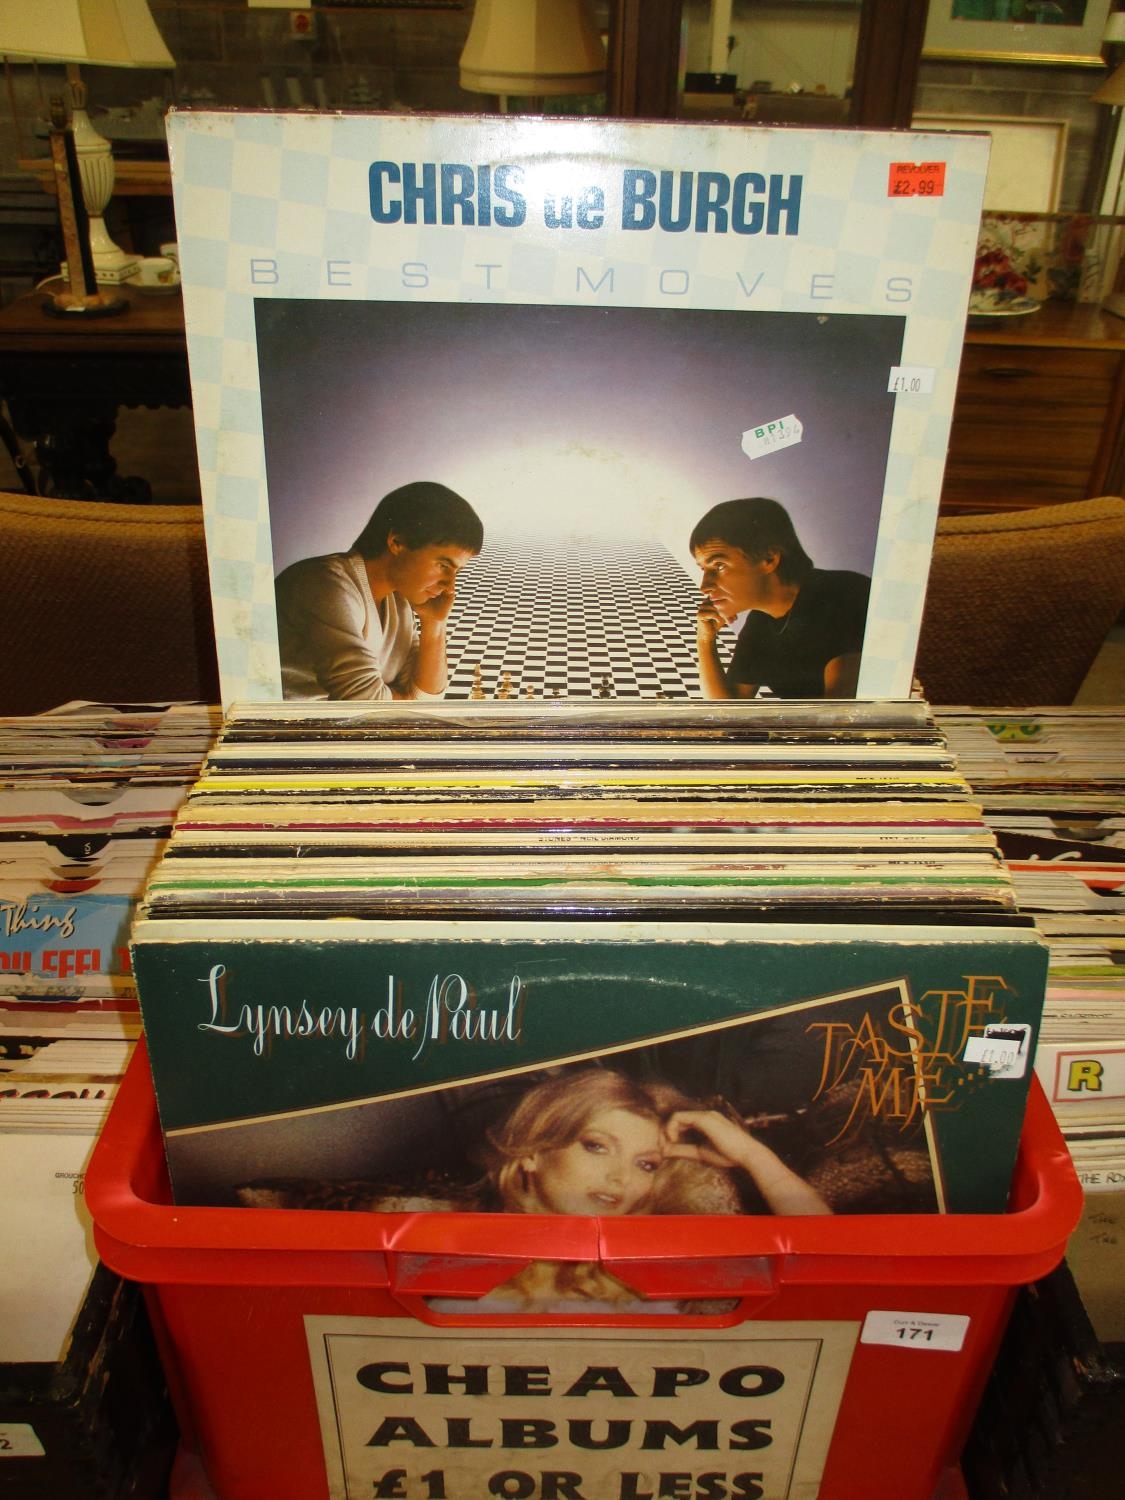 Box of LPs including Neil Diamond, Chris De Burgh